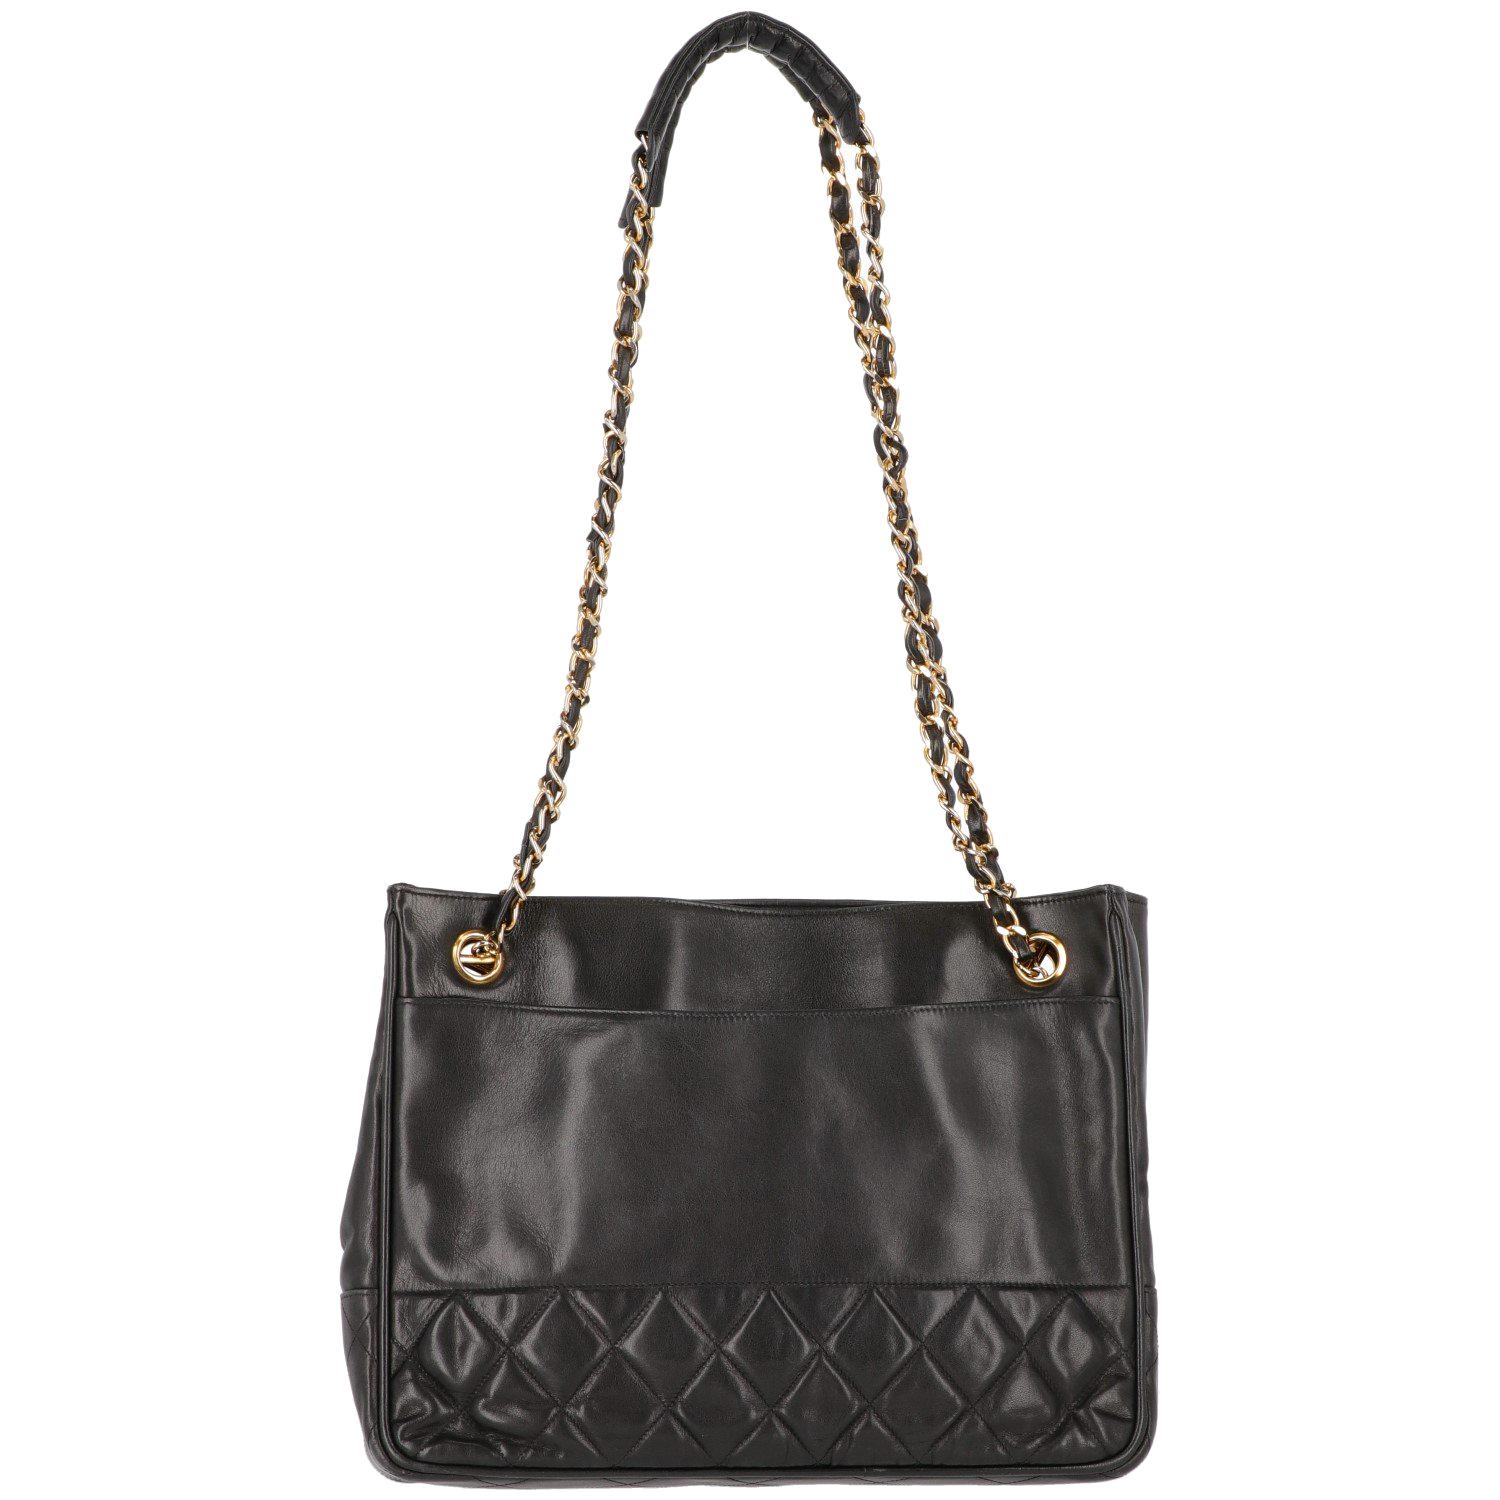 1980s Chanel Black Vintage Bag